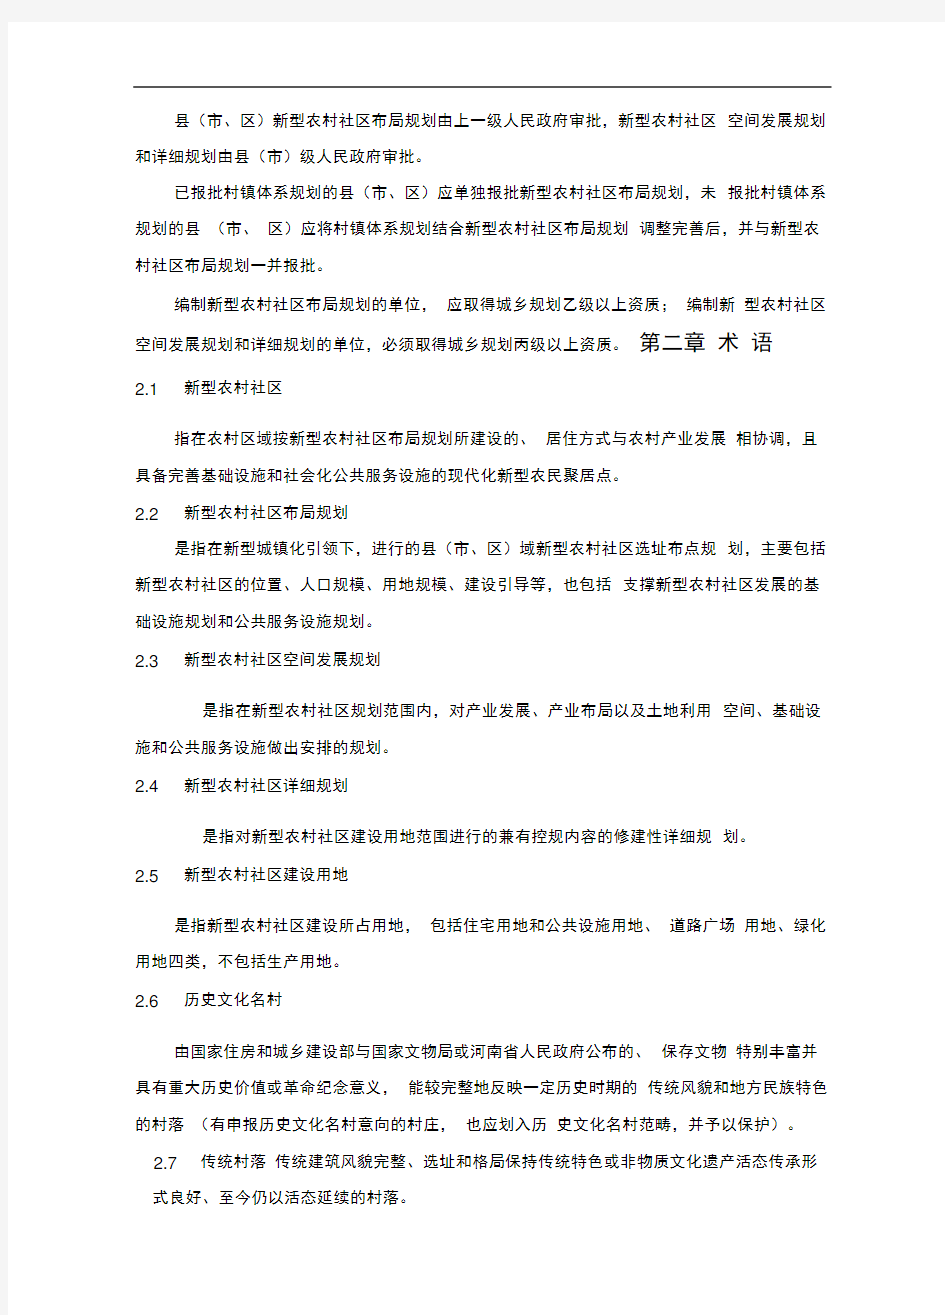 河南省新型农村社区规划建设标准(导则)正式稿